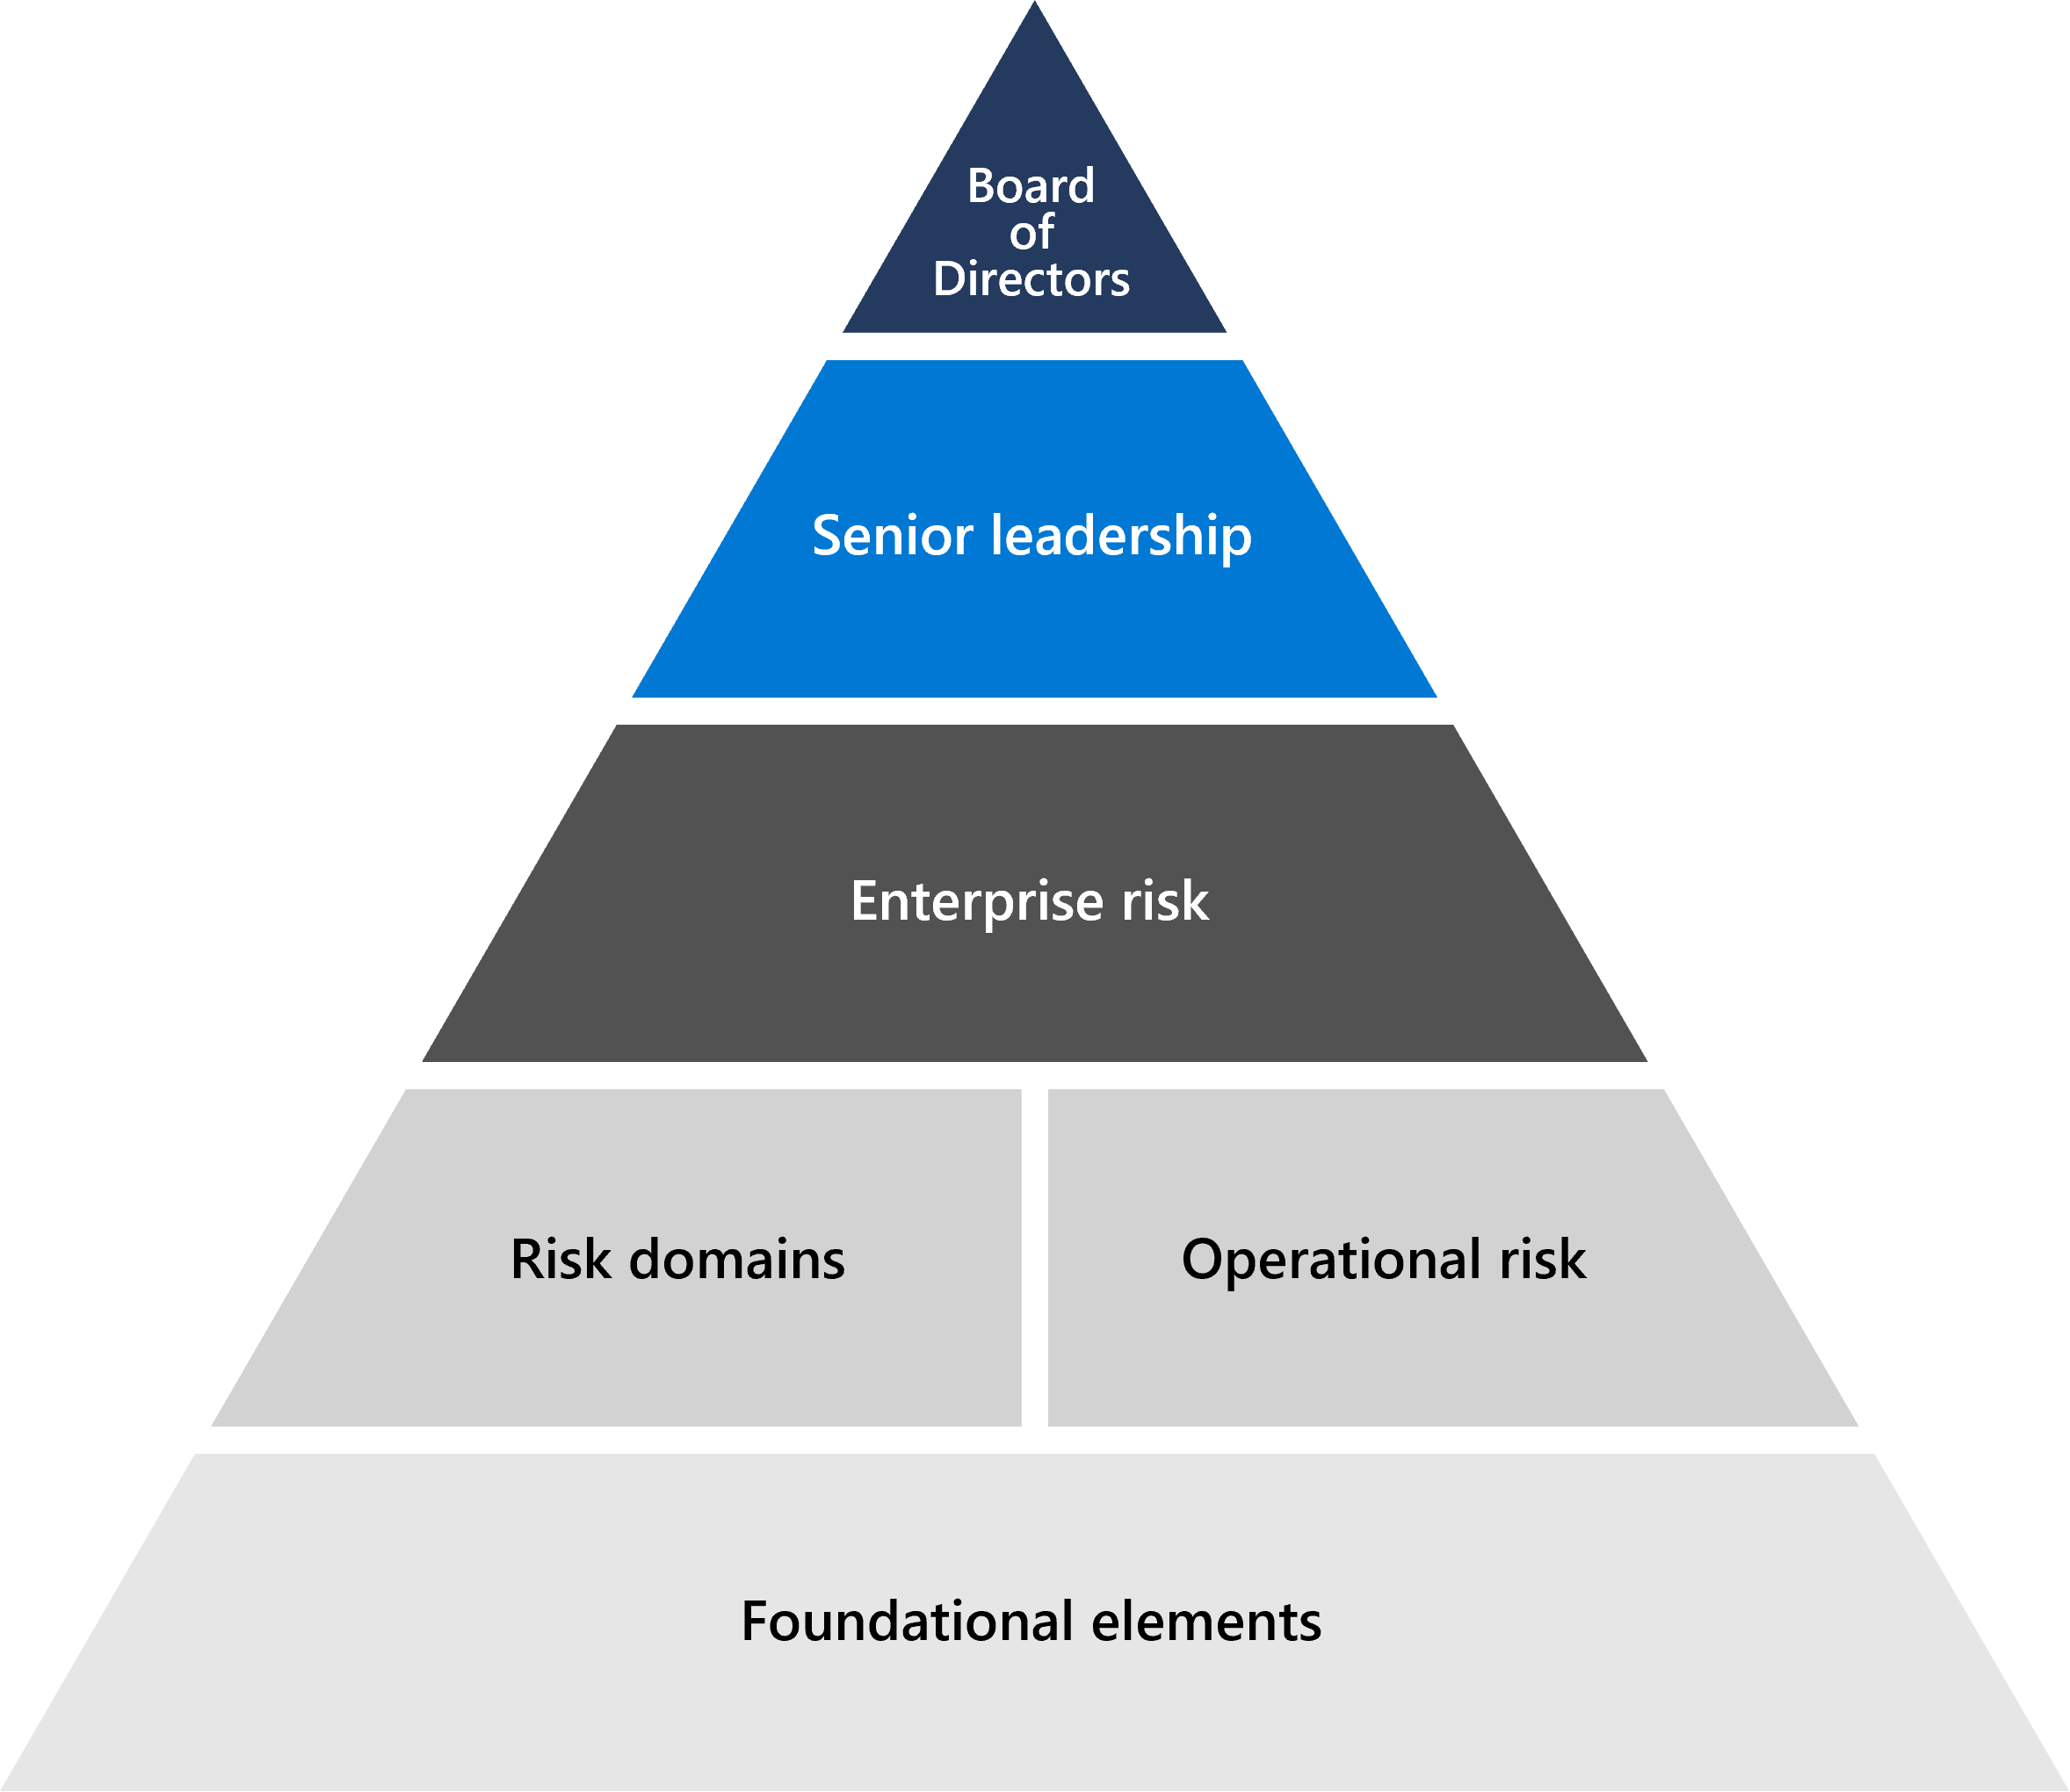 显示 Microsoft 风险管理基础的棱锥图 - 从最高层开始，包括董事会、高级领导、企业风险。下面的线是风险域和操作域，三角形的底部是由侦听系统、方法和工具组成的基础元素